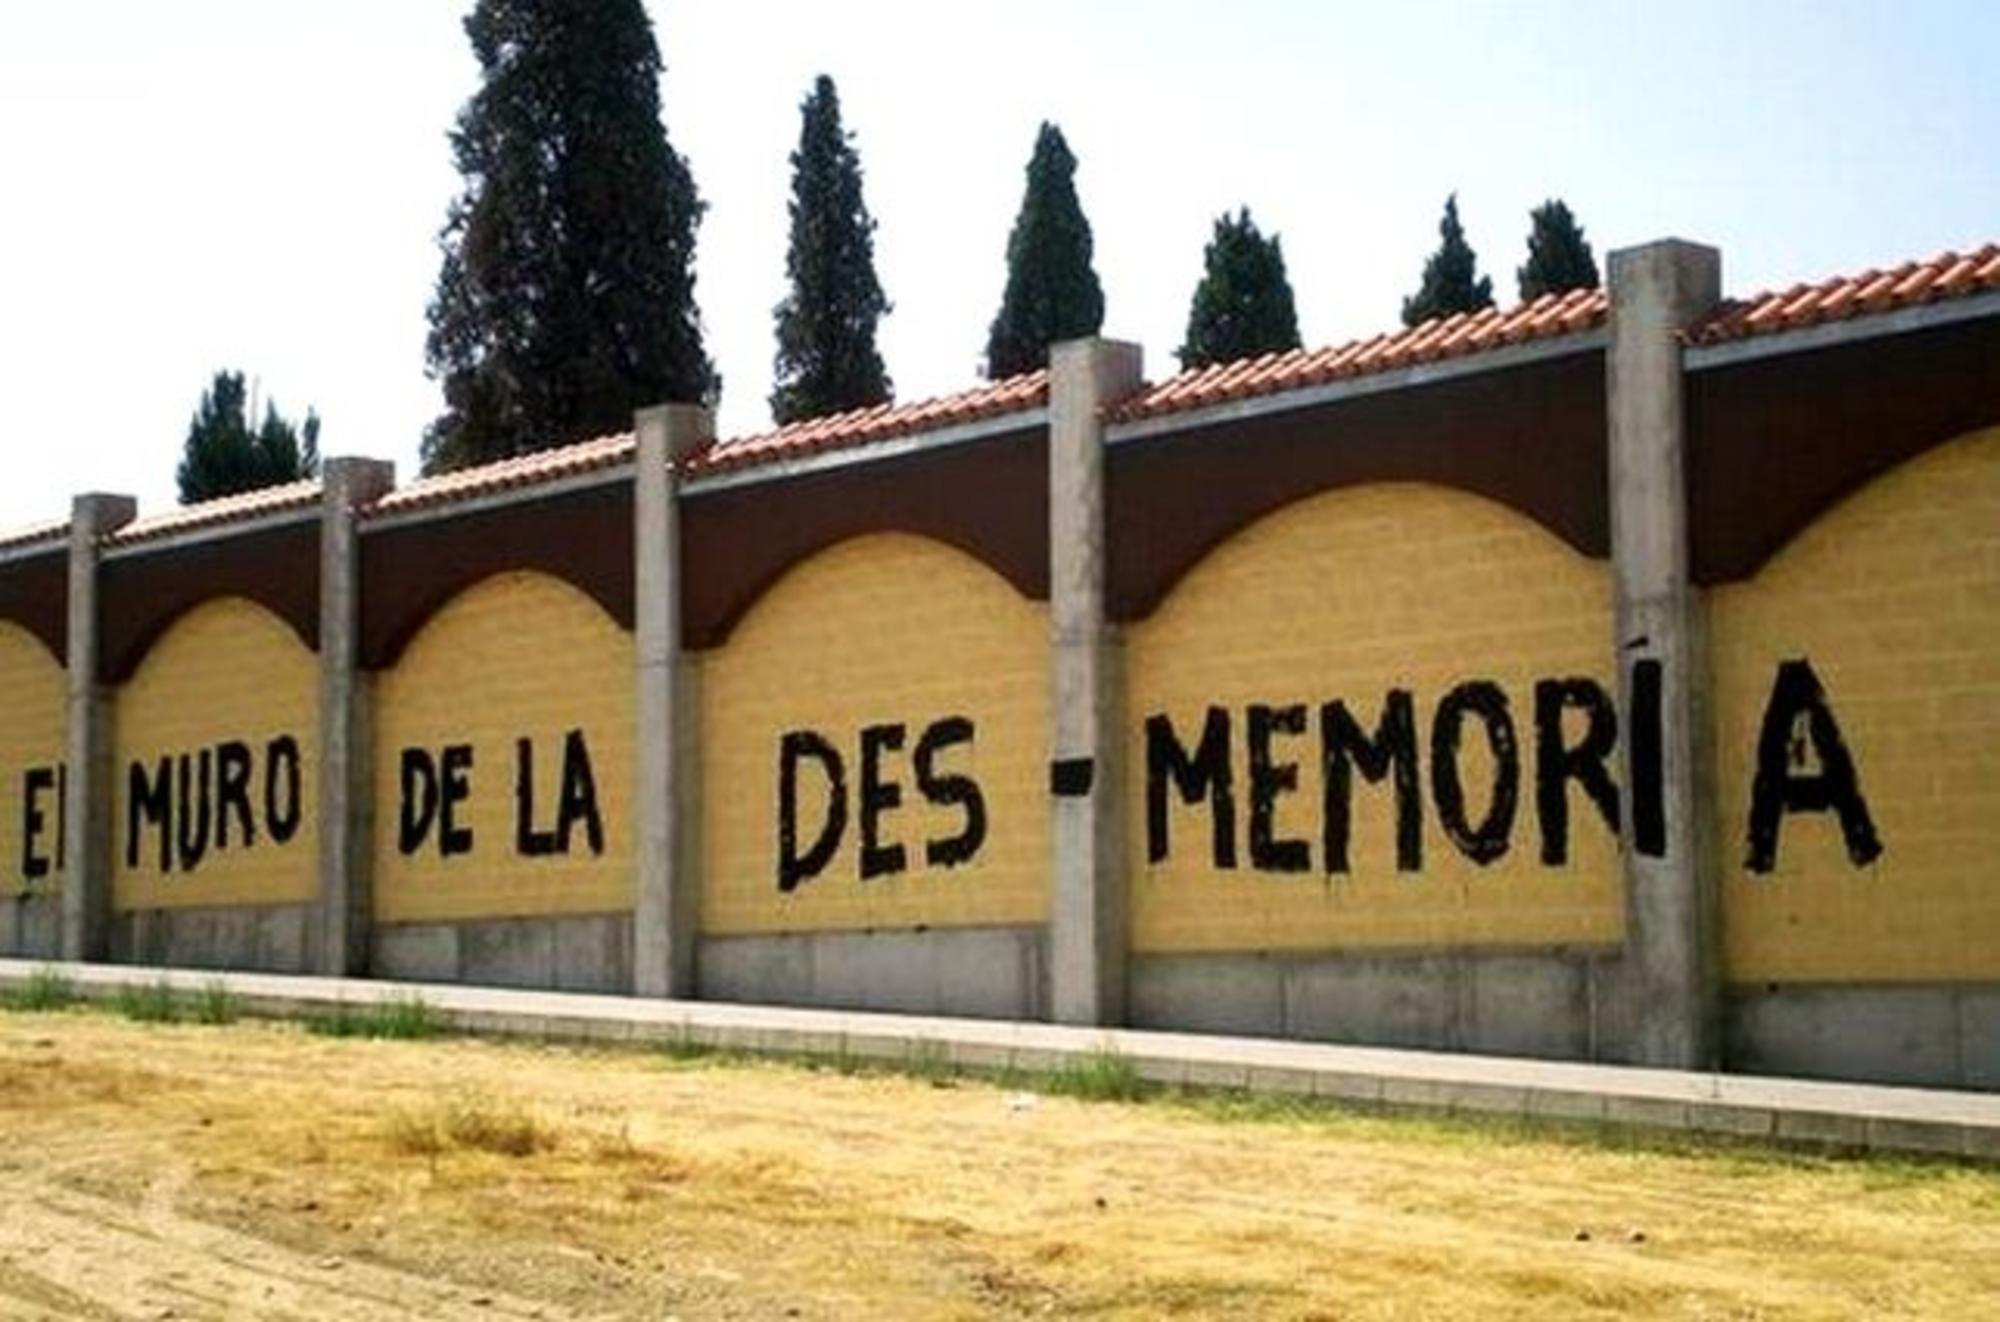 Muro del cementerio de Badajoz